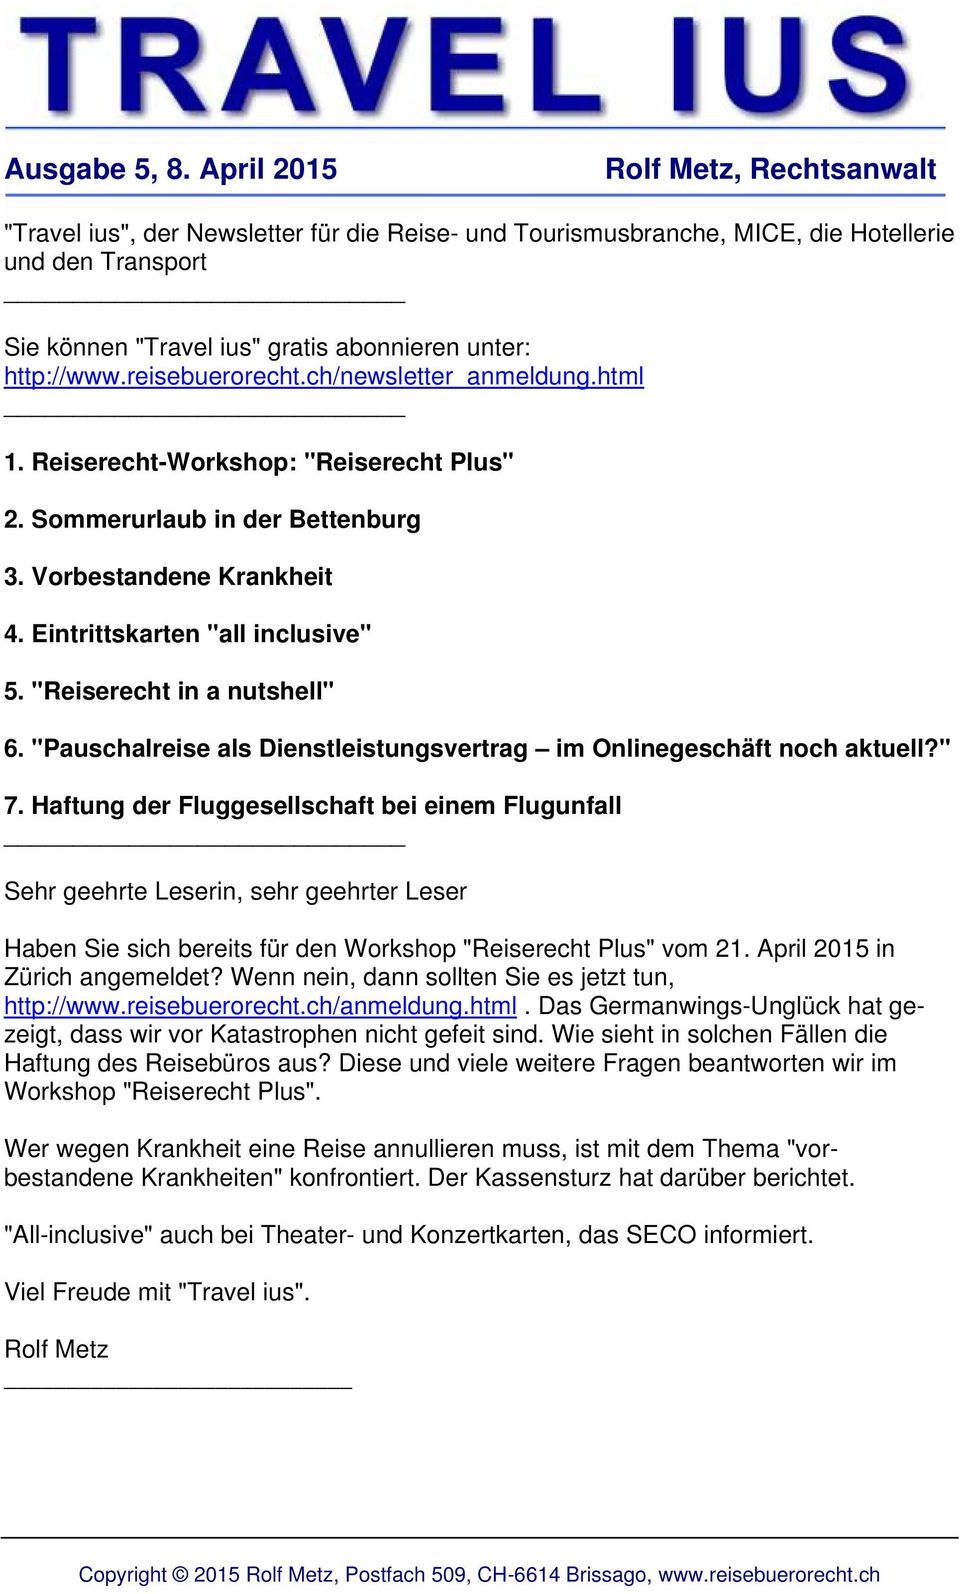 http://www.reisebuerorecht.ch/newsletter_anmeldung.html _ 1. Reiserecht-Workshop: "Reiserecht Plus" 2. Sommerurlaub in der Bettenburg 3. Vorbestandene Krankheit 4. Eintrittskarten "all inclusive" 5.